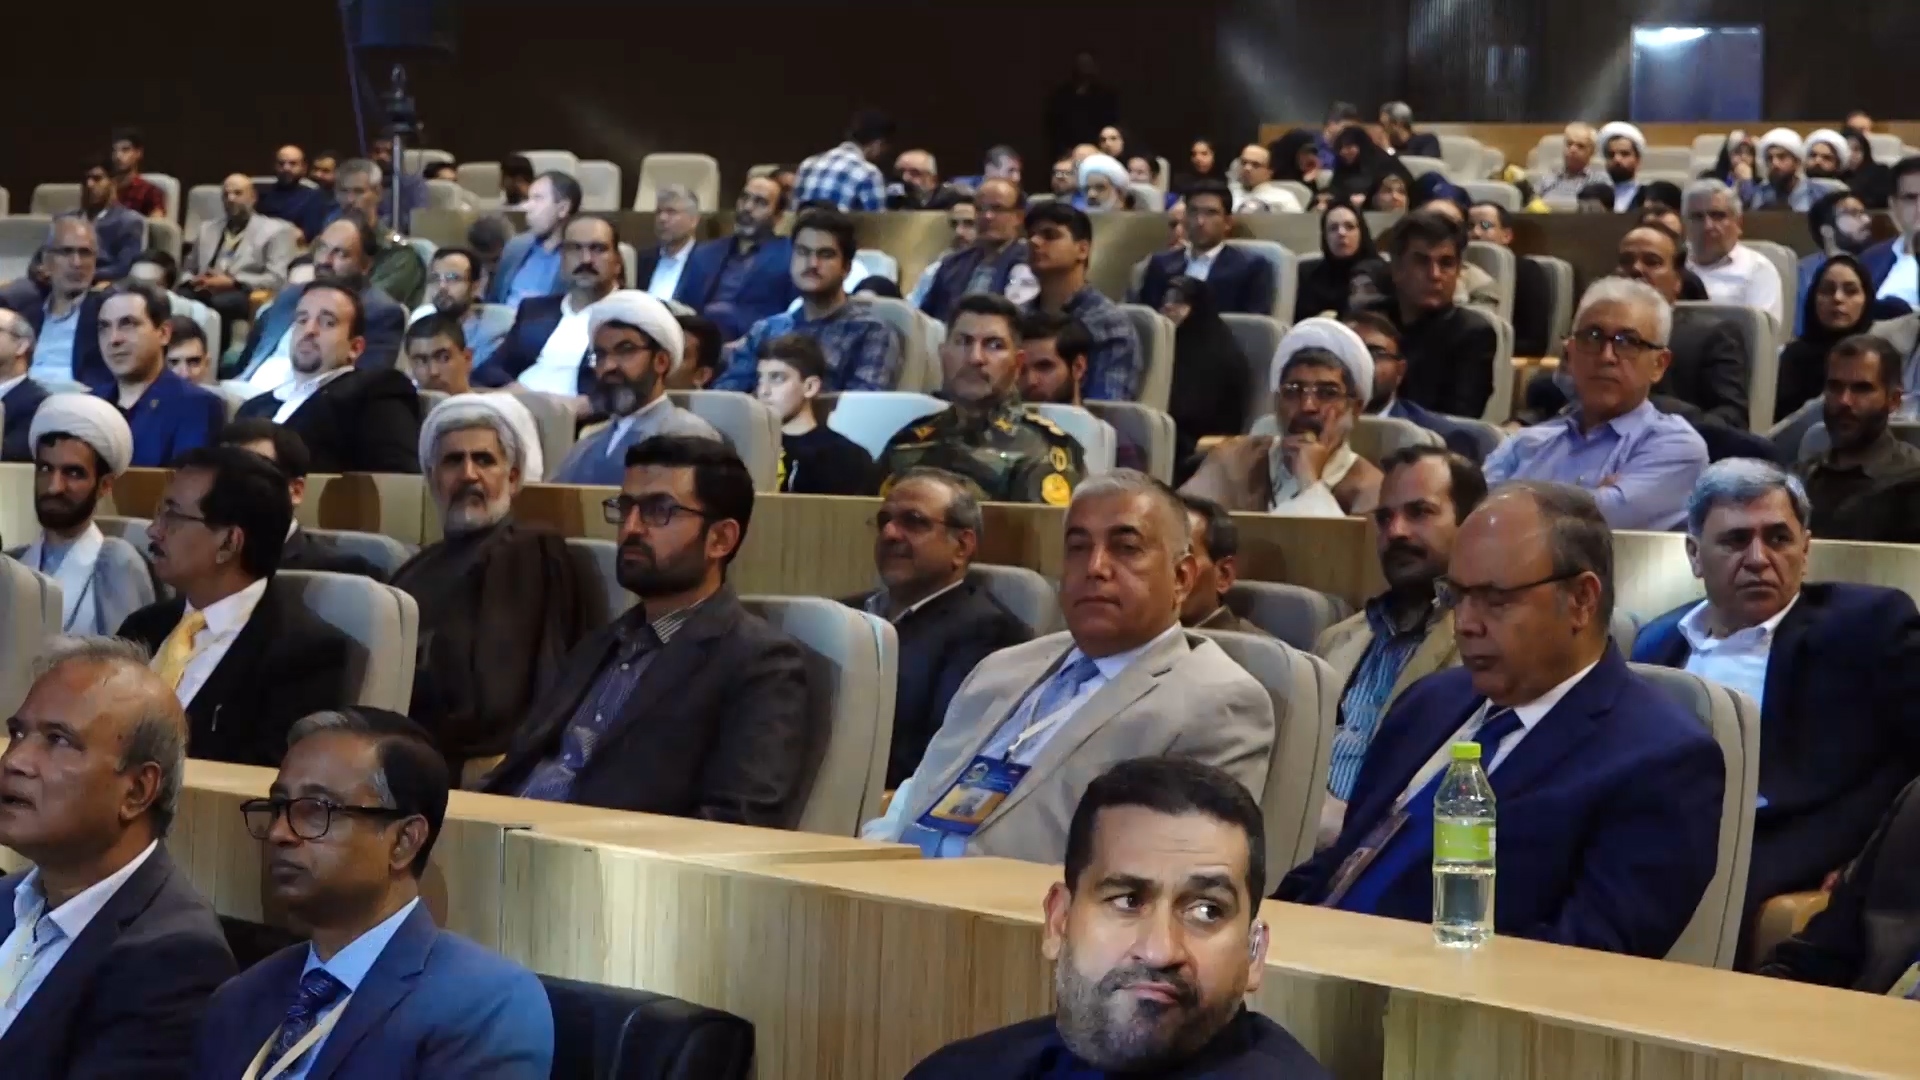 ۴۴ سال افتخار و پیشرفت پزشکی در اصفهان